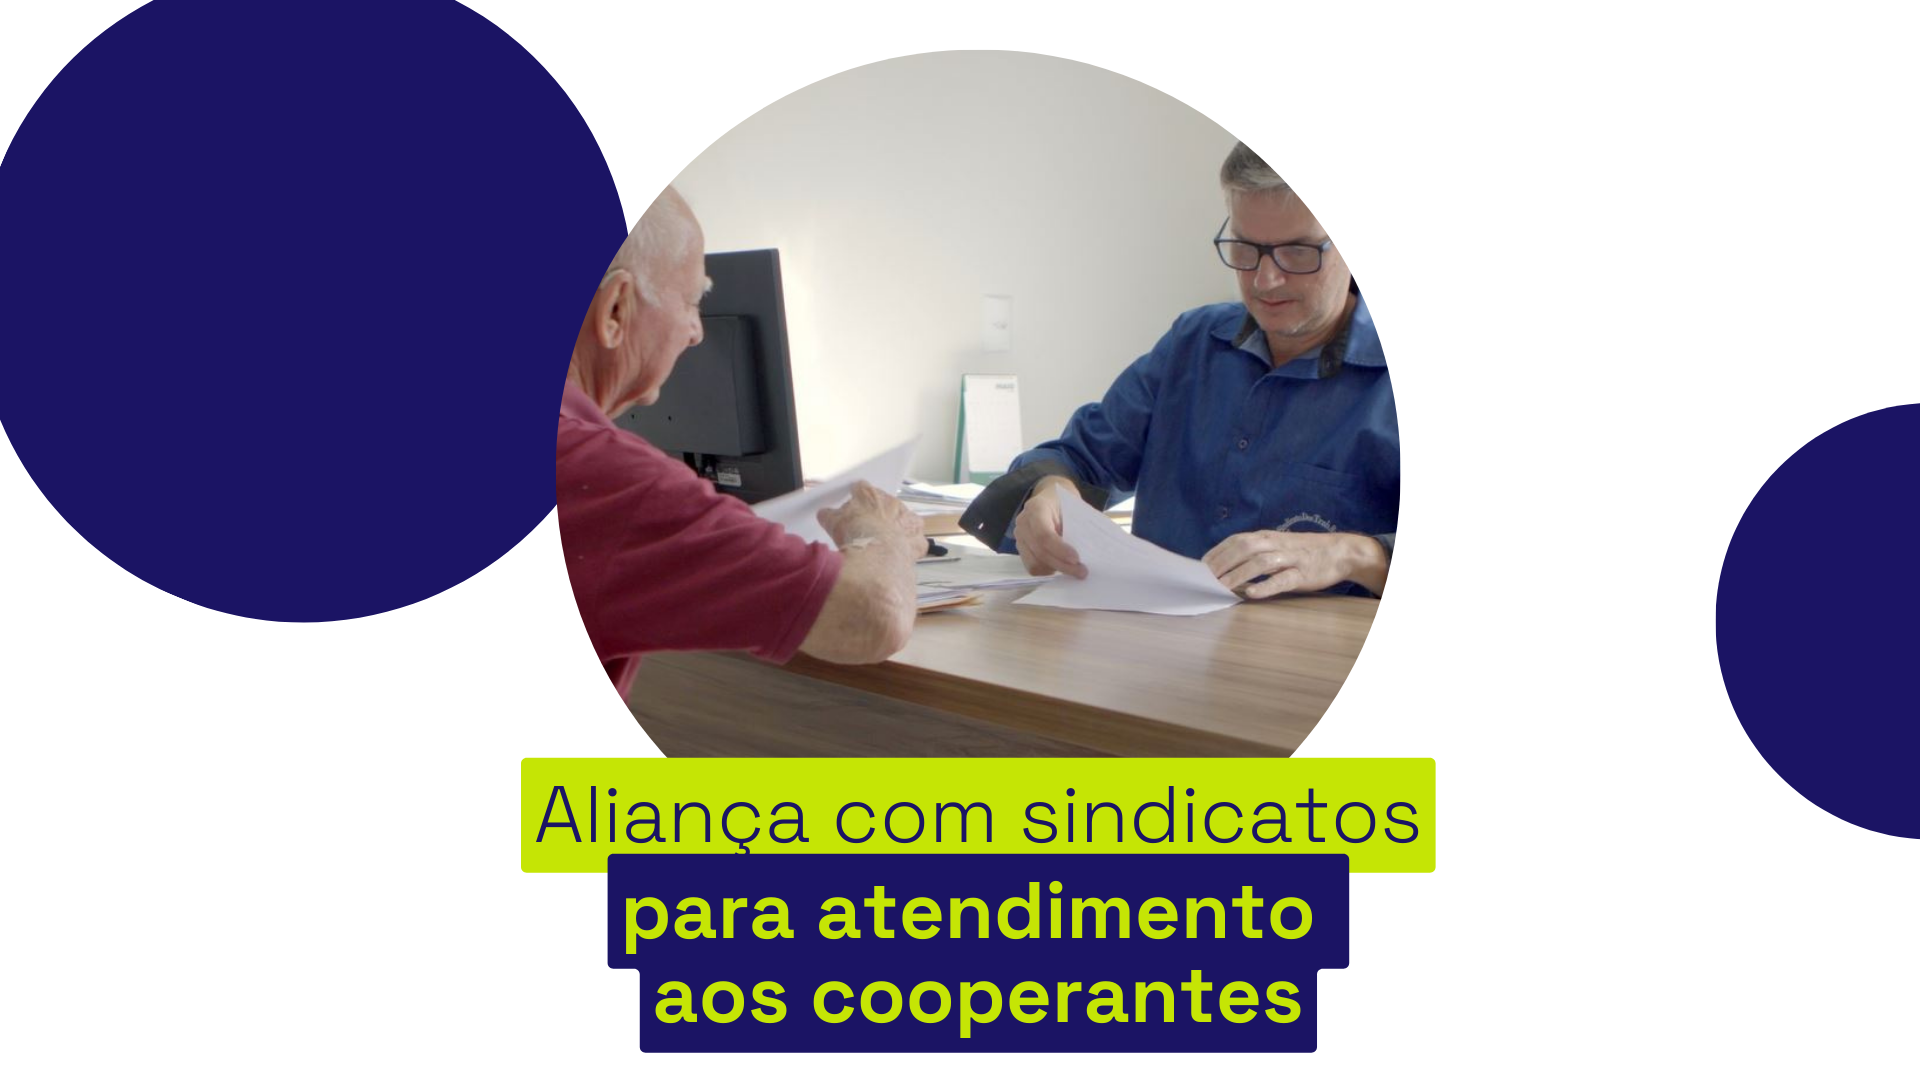 Sindicatos são parceiros da Coprel no atendimento aos cooperantes